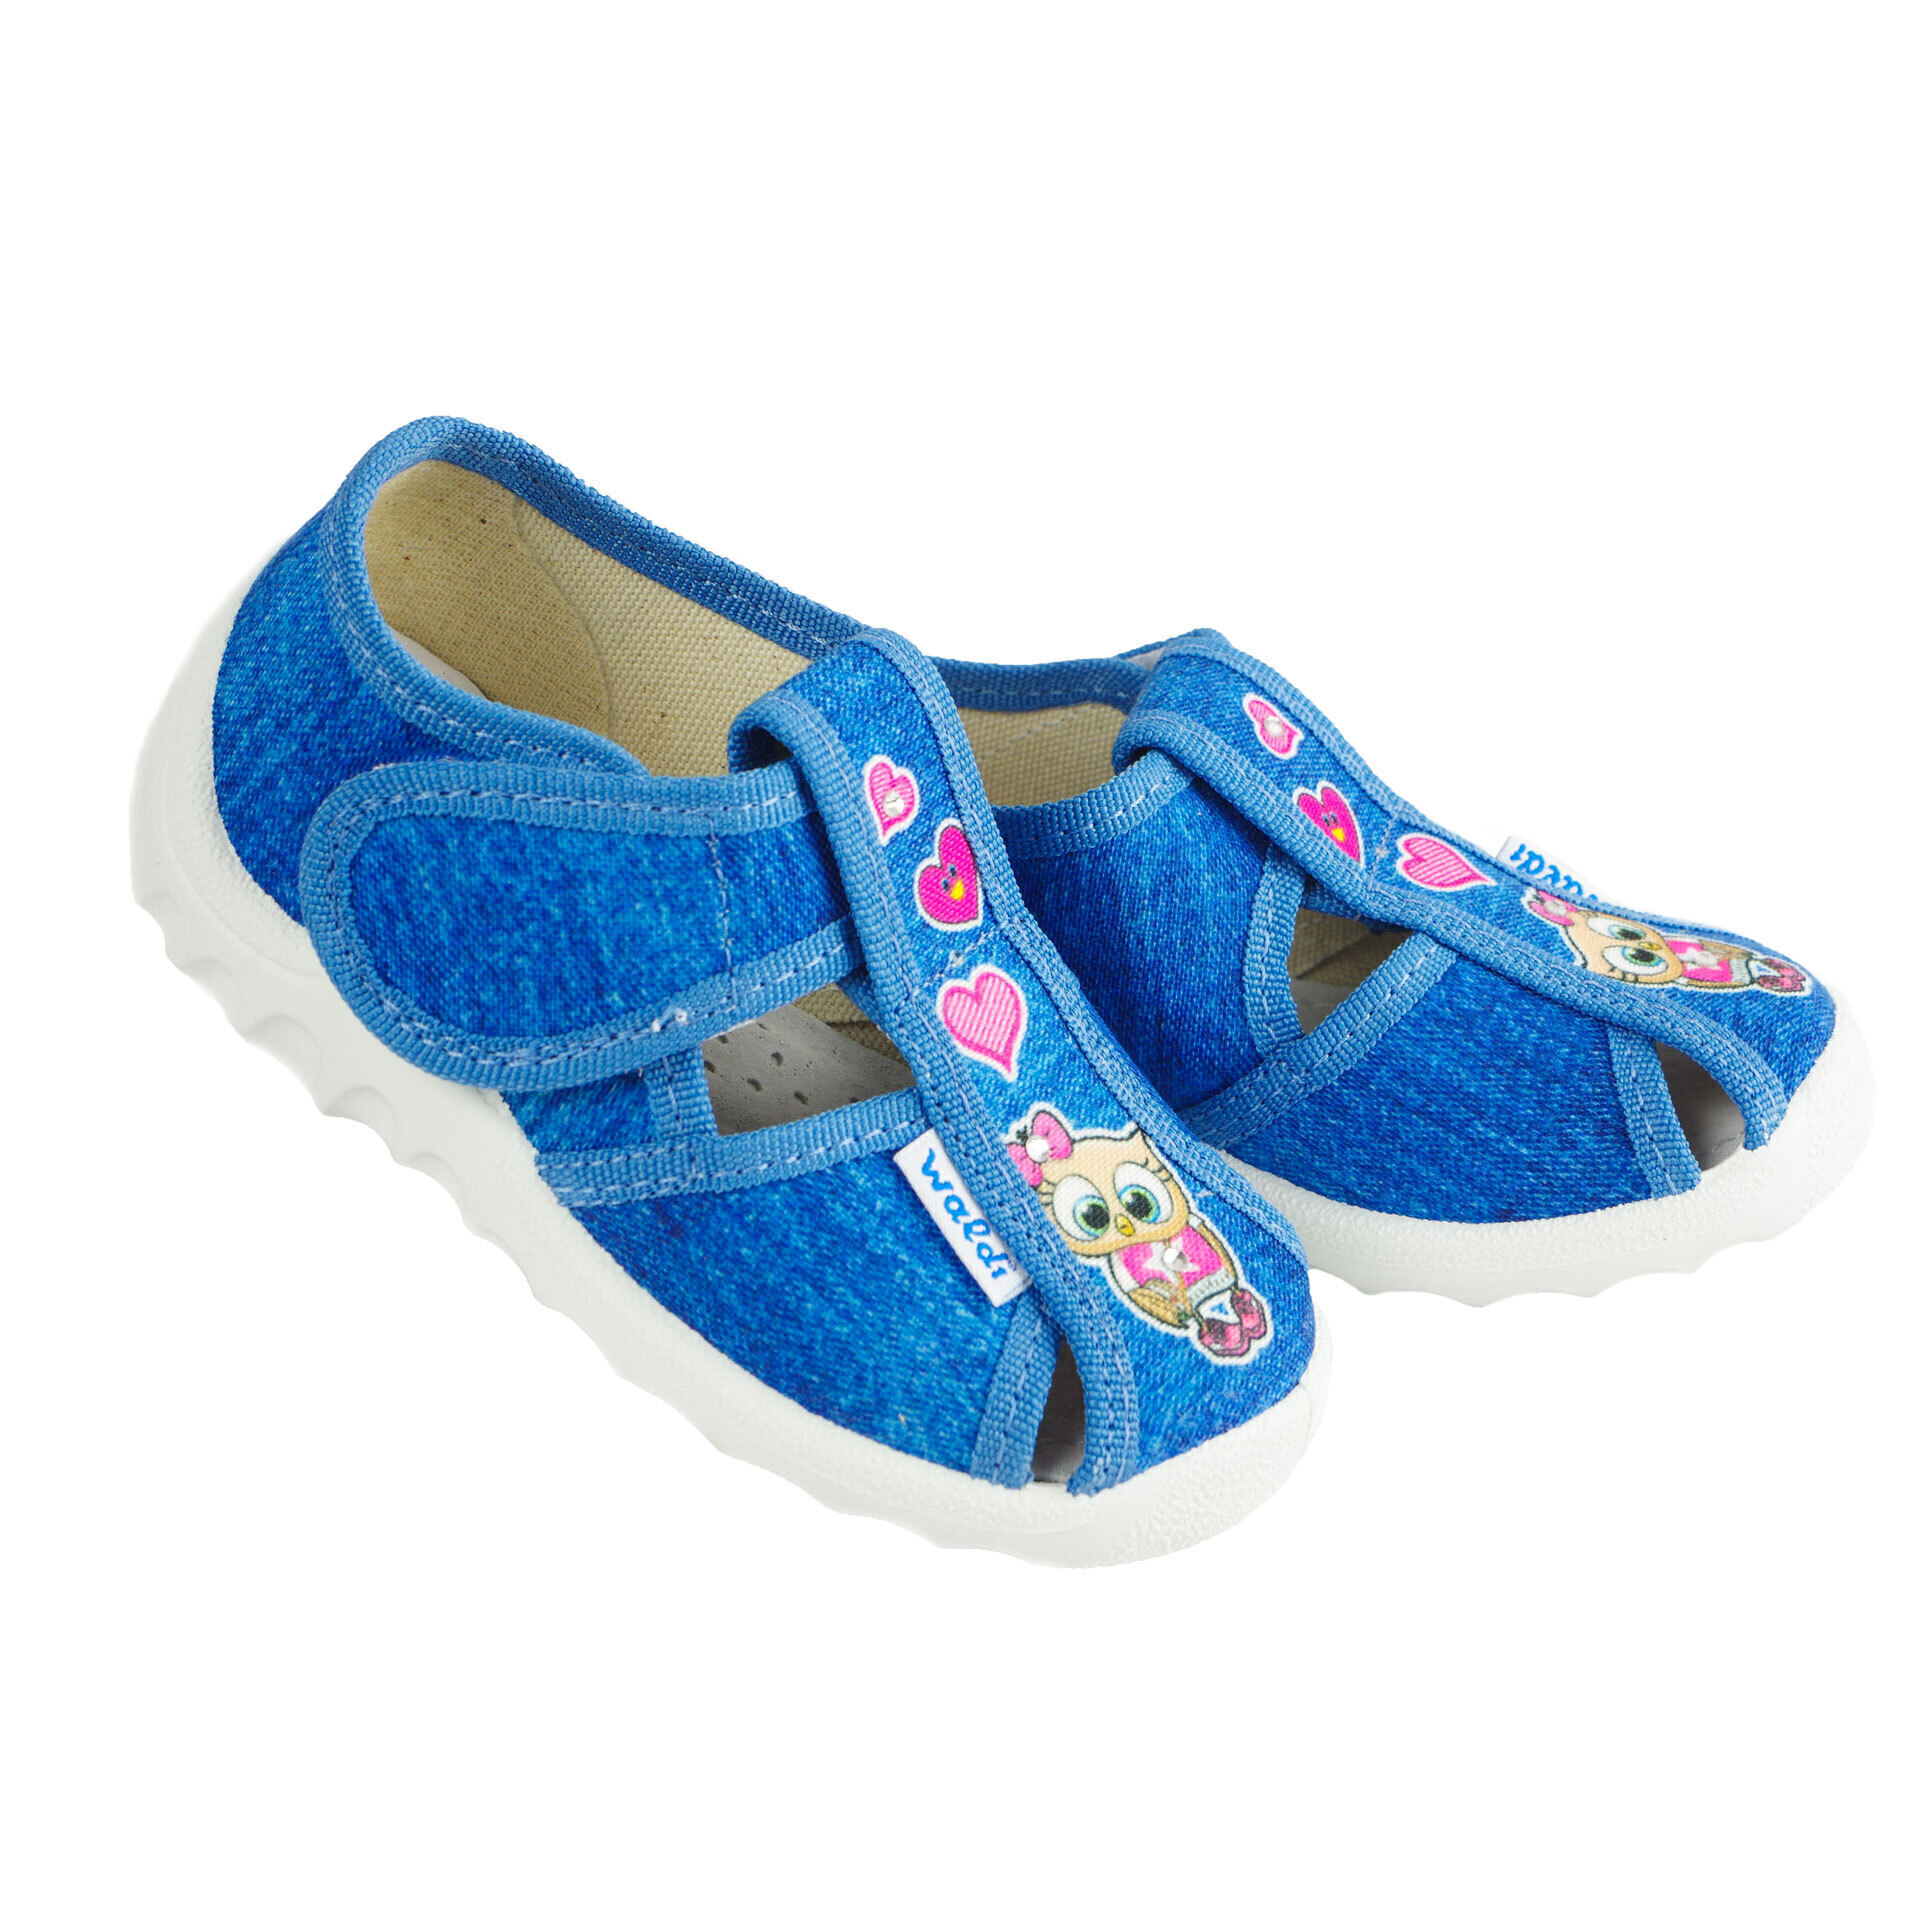 Текстильная обувь для девочек Тапочки Сова (2043) цвет Розовый 21-27 размеры – Sole Kids. Фото 2